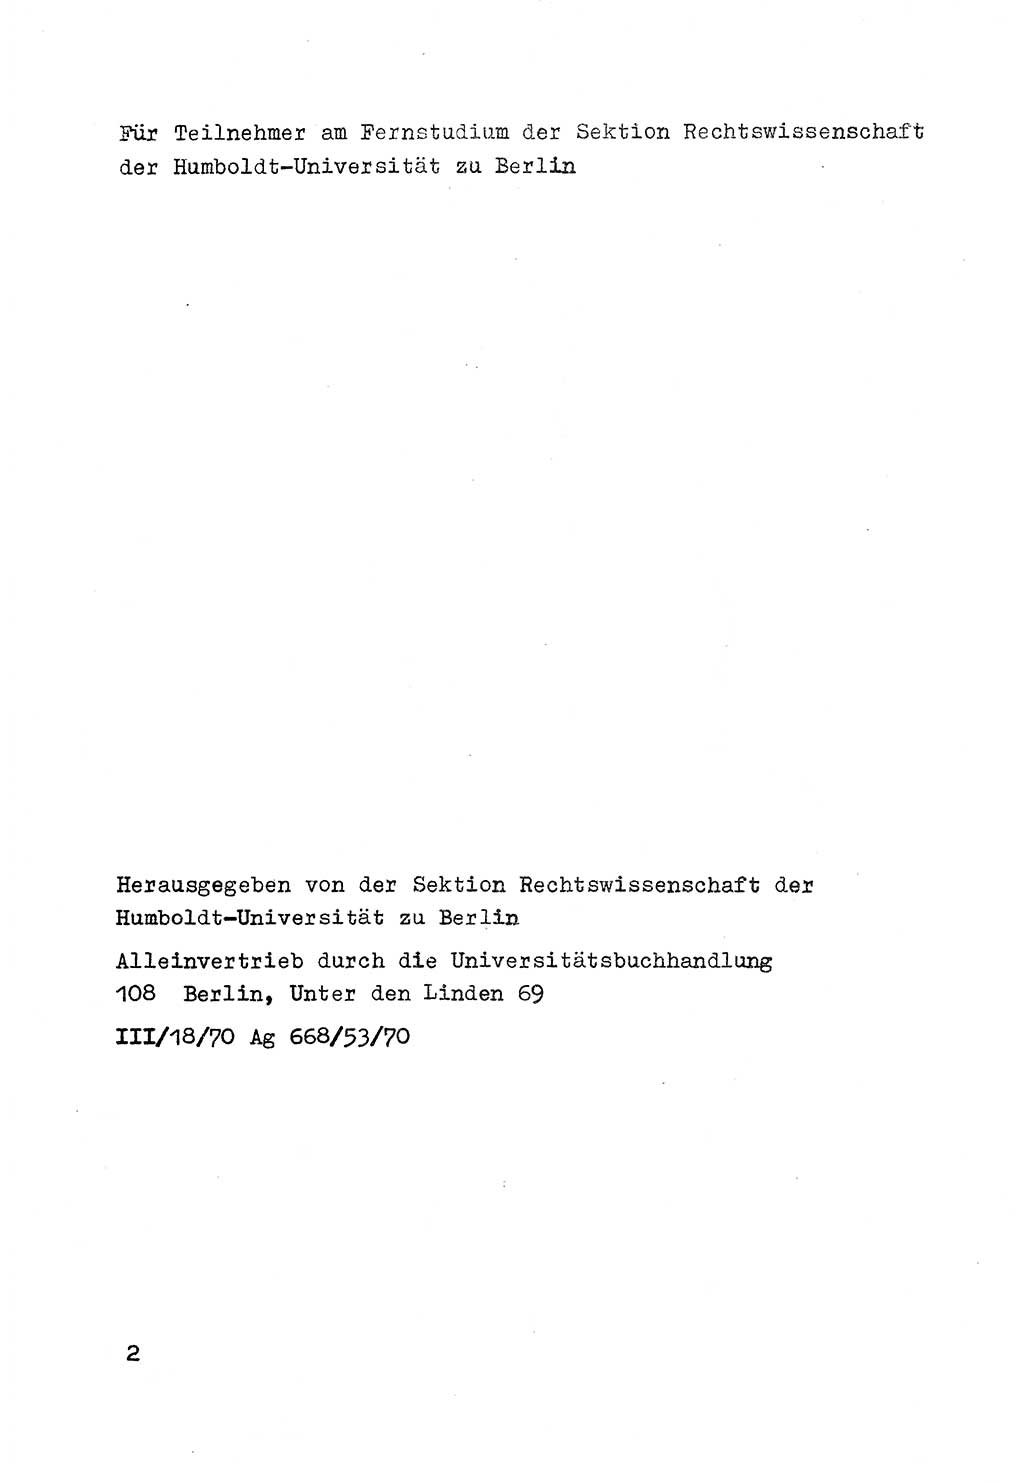 Strafrecht der DDR (Deutsche Demokratische Republik), Besonderer Teil, Lehrmaterial, Heft 7 1970, Seite 2 (Strafr. DDR BT Lehrmat. H. 7 1970, S. 2)